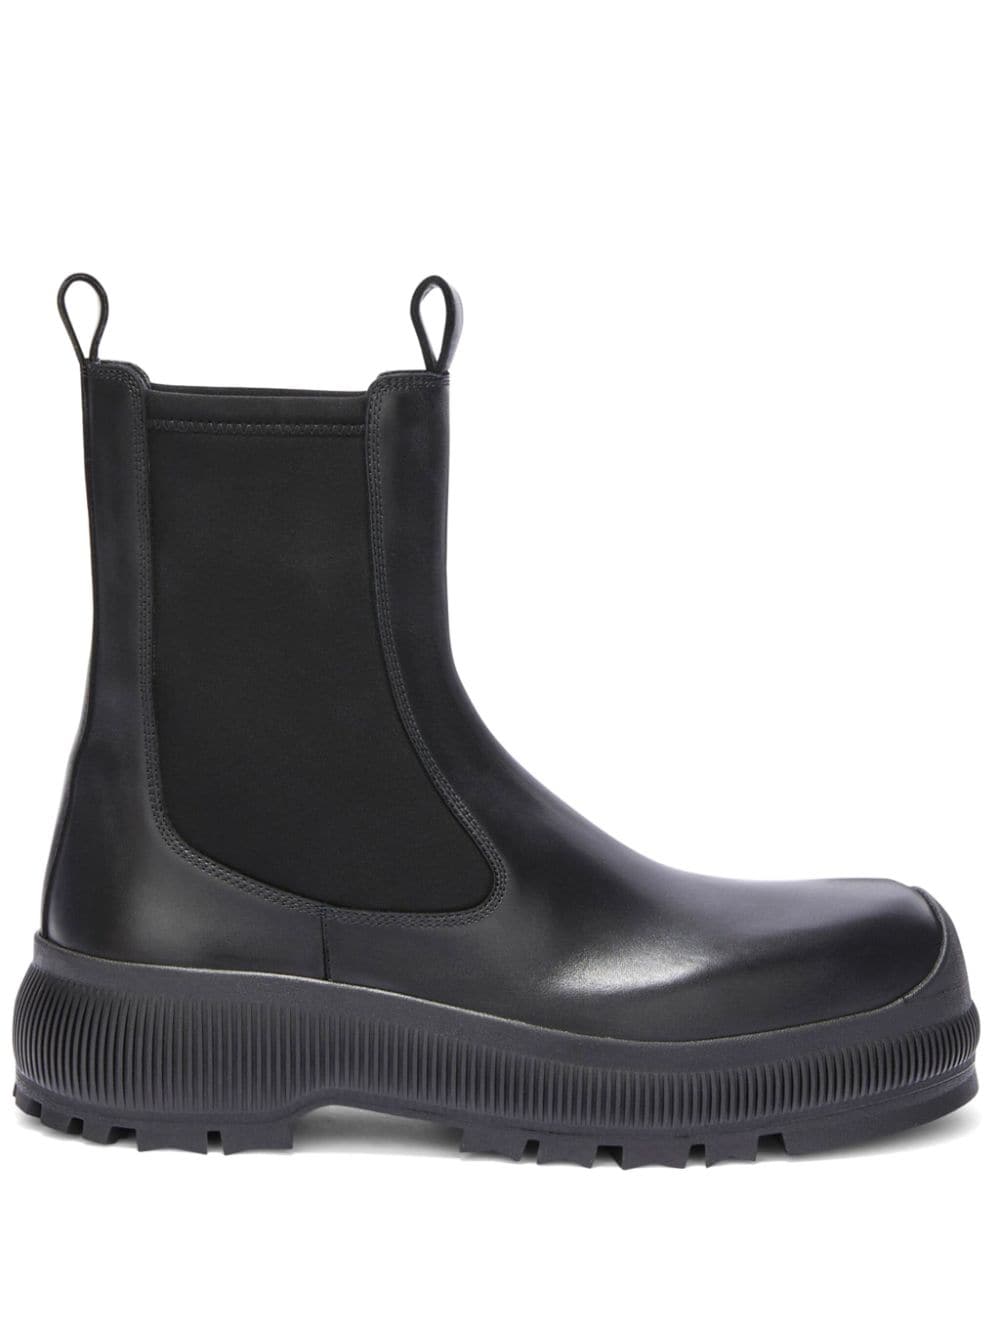 Jil Sander leather Chelsea boots - Black von Jil Sander